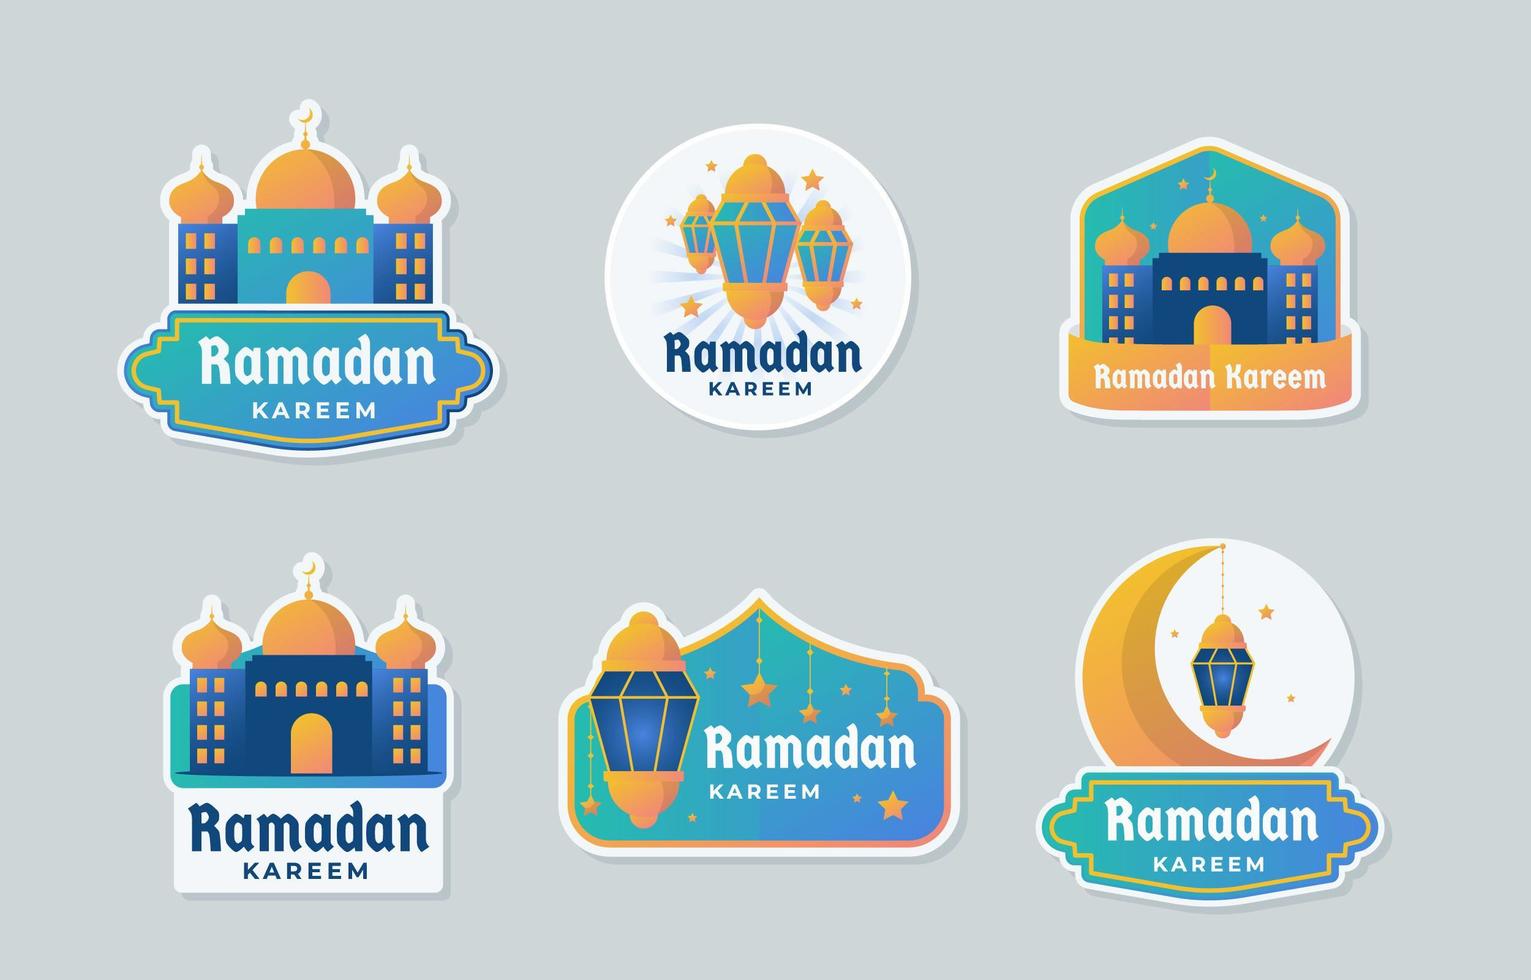 samling av ramadan märken med en gul och blå färgkombination vektor